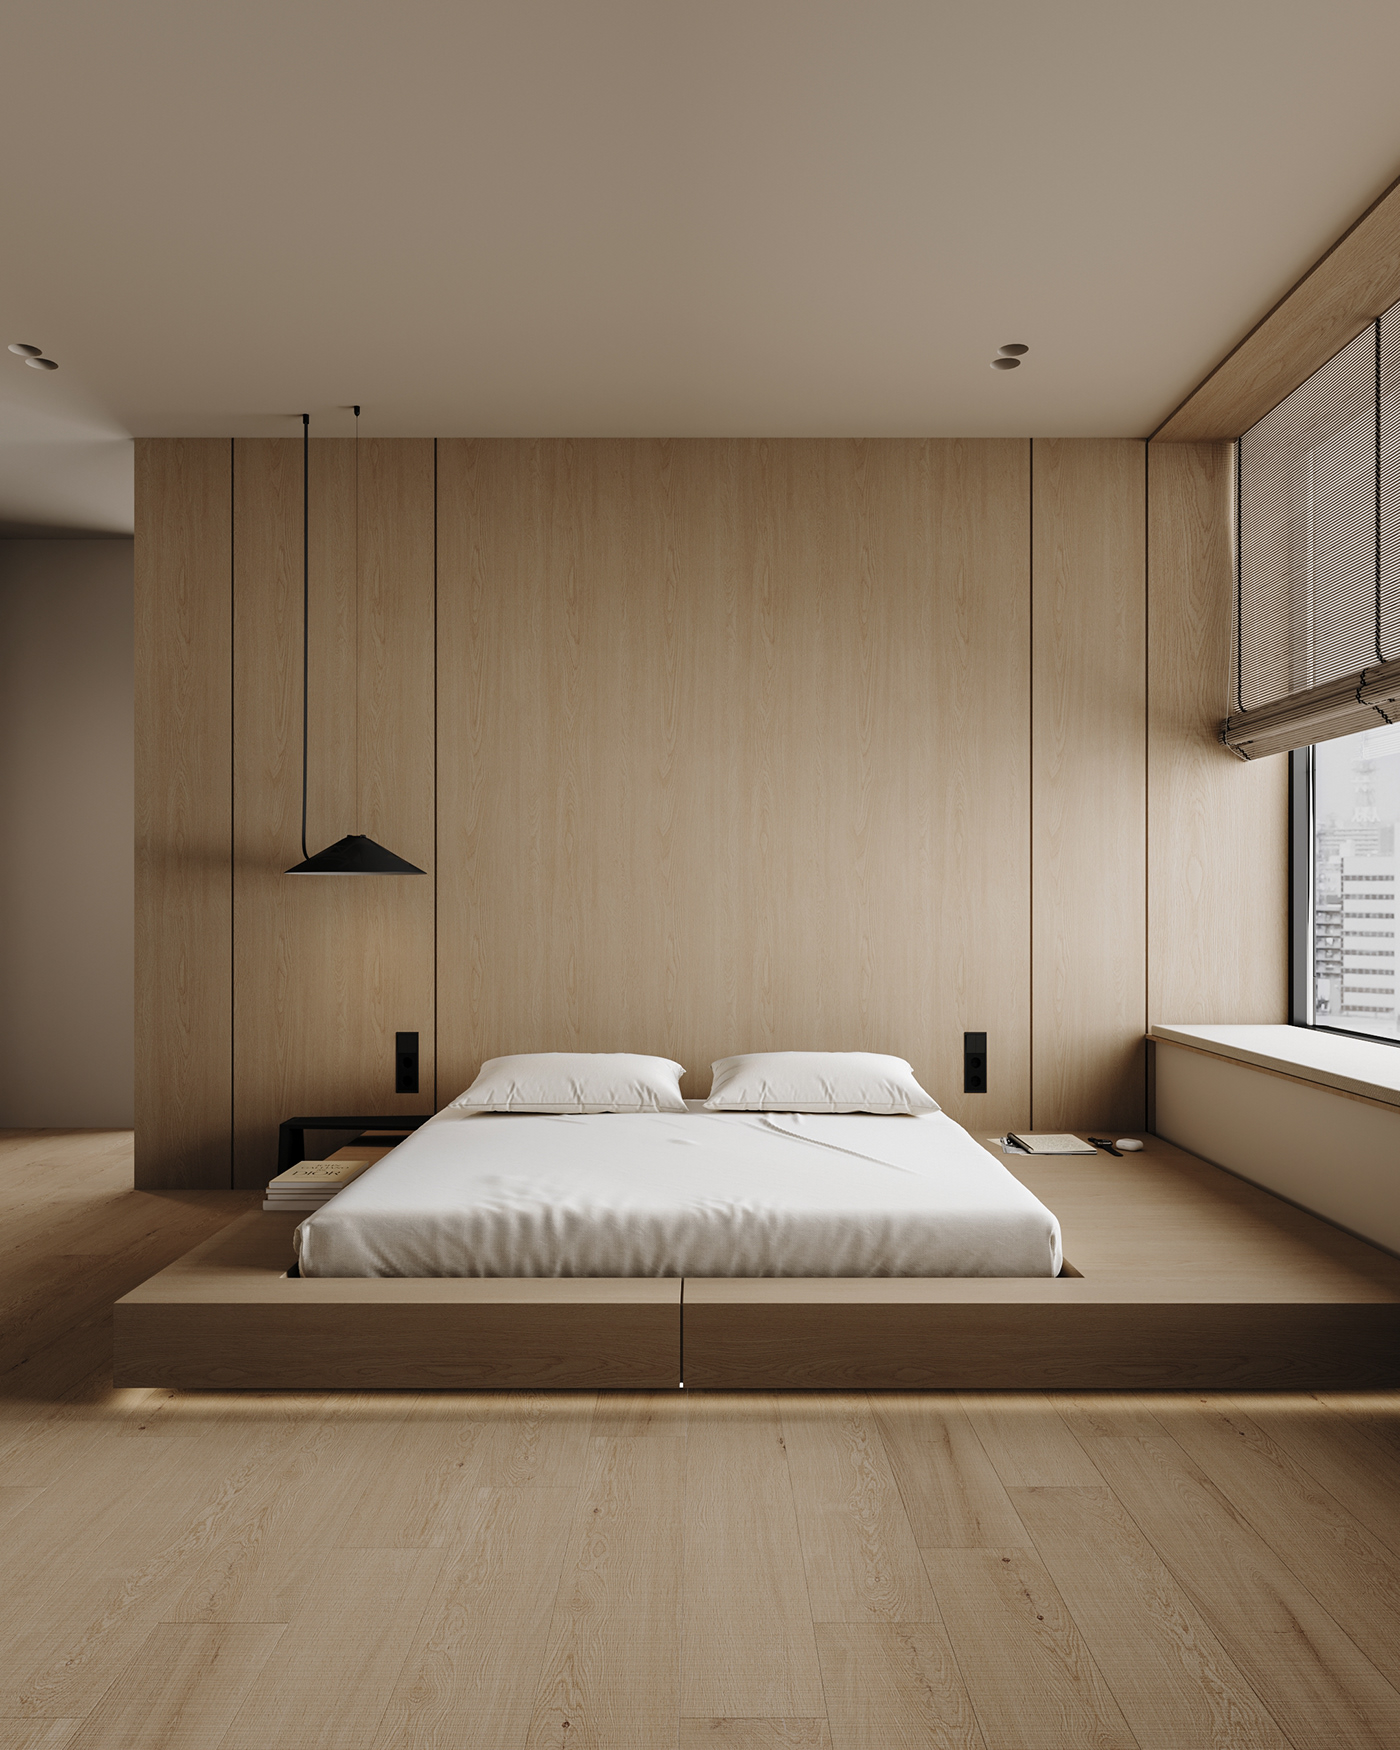 house visualization Render architecture 3ds max modern archviz Villa interior design  Interior